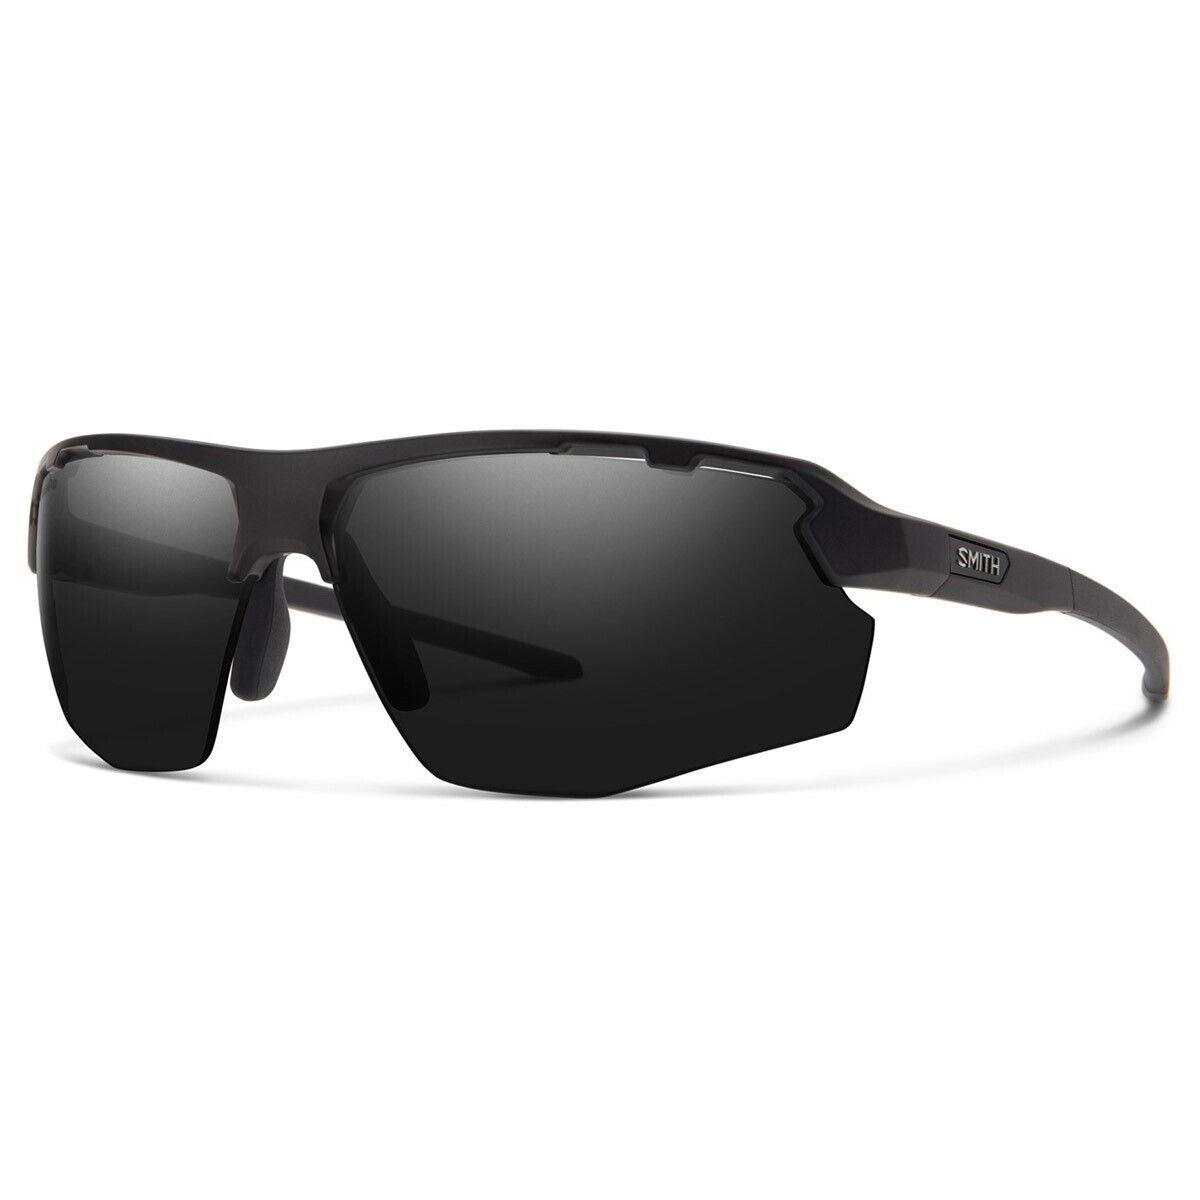 Smith Resolve Sunglasses Matte Black Frame Chromapop Black Lens + Bonus